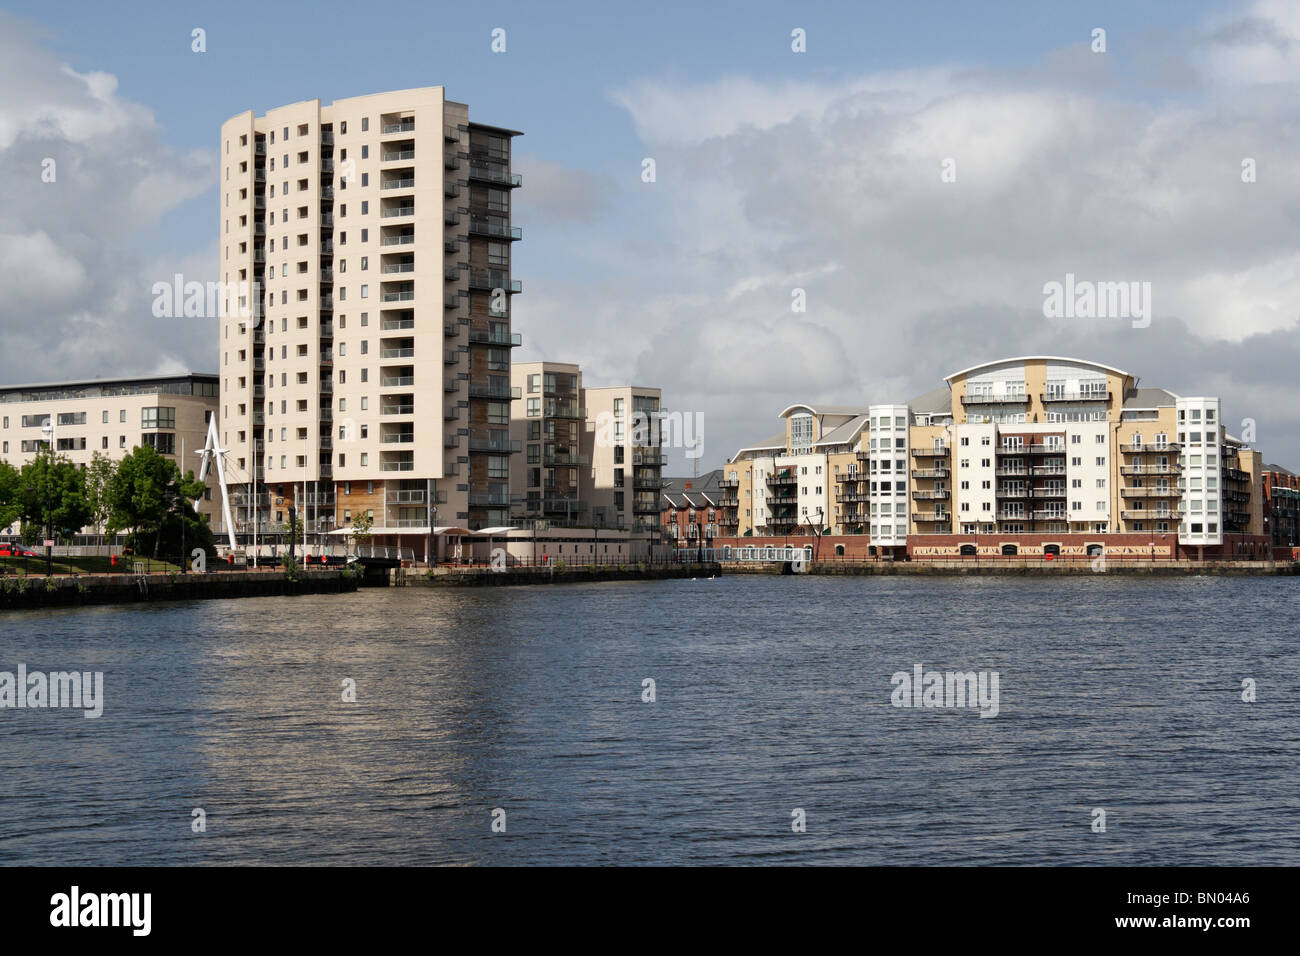 Appartamenti moderni e riqualificazione a Cardiff Bay, Galles, Regno Unito appartamenti moderni fronte mare che vivono alti edifici residenziali Foto Stock